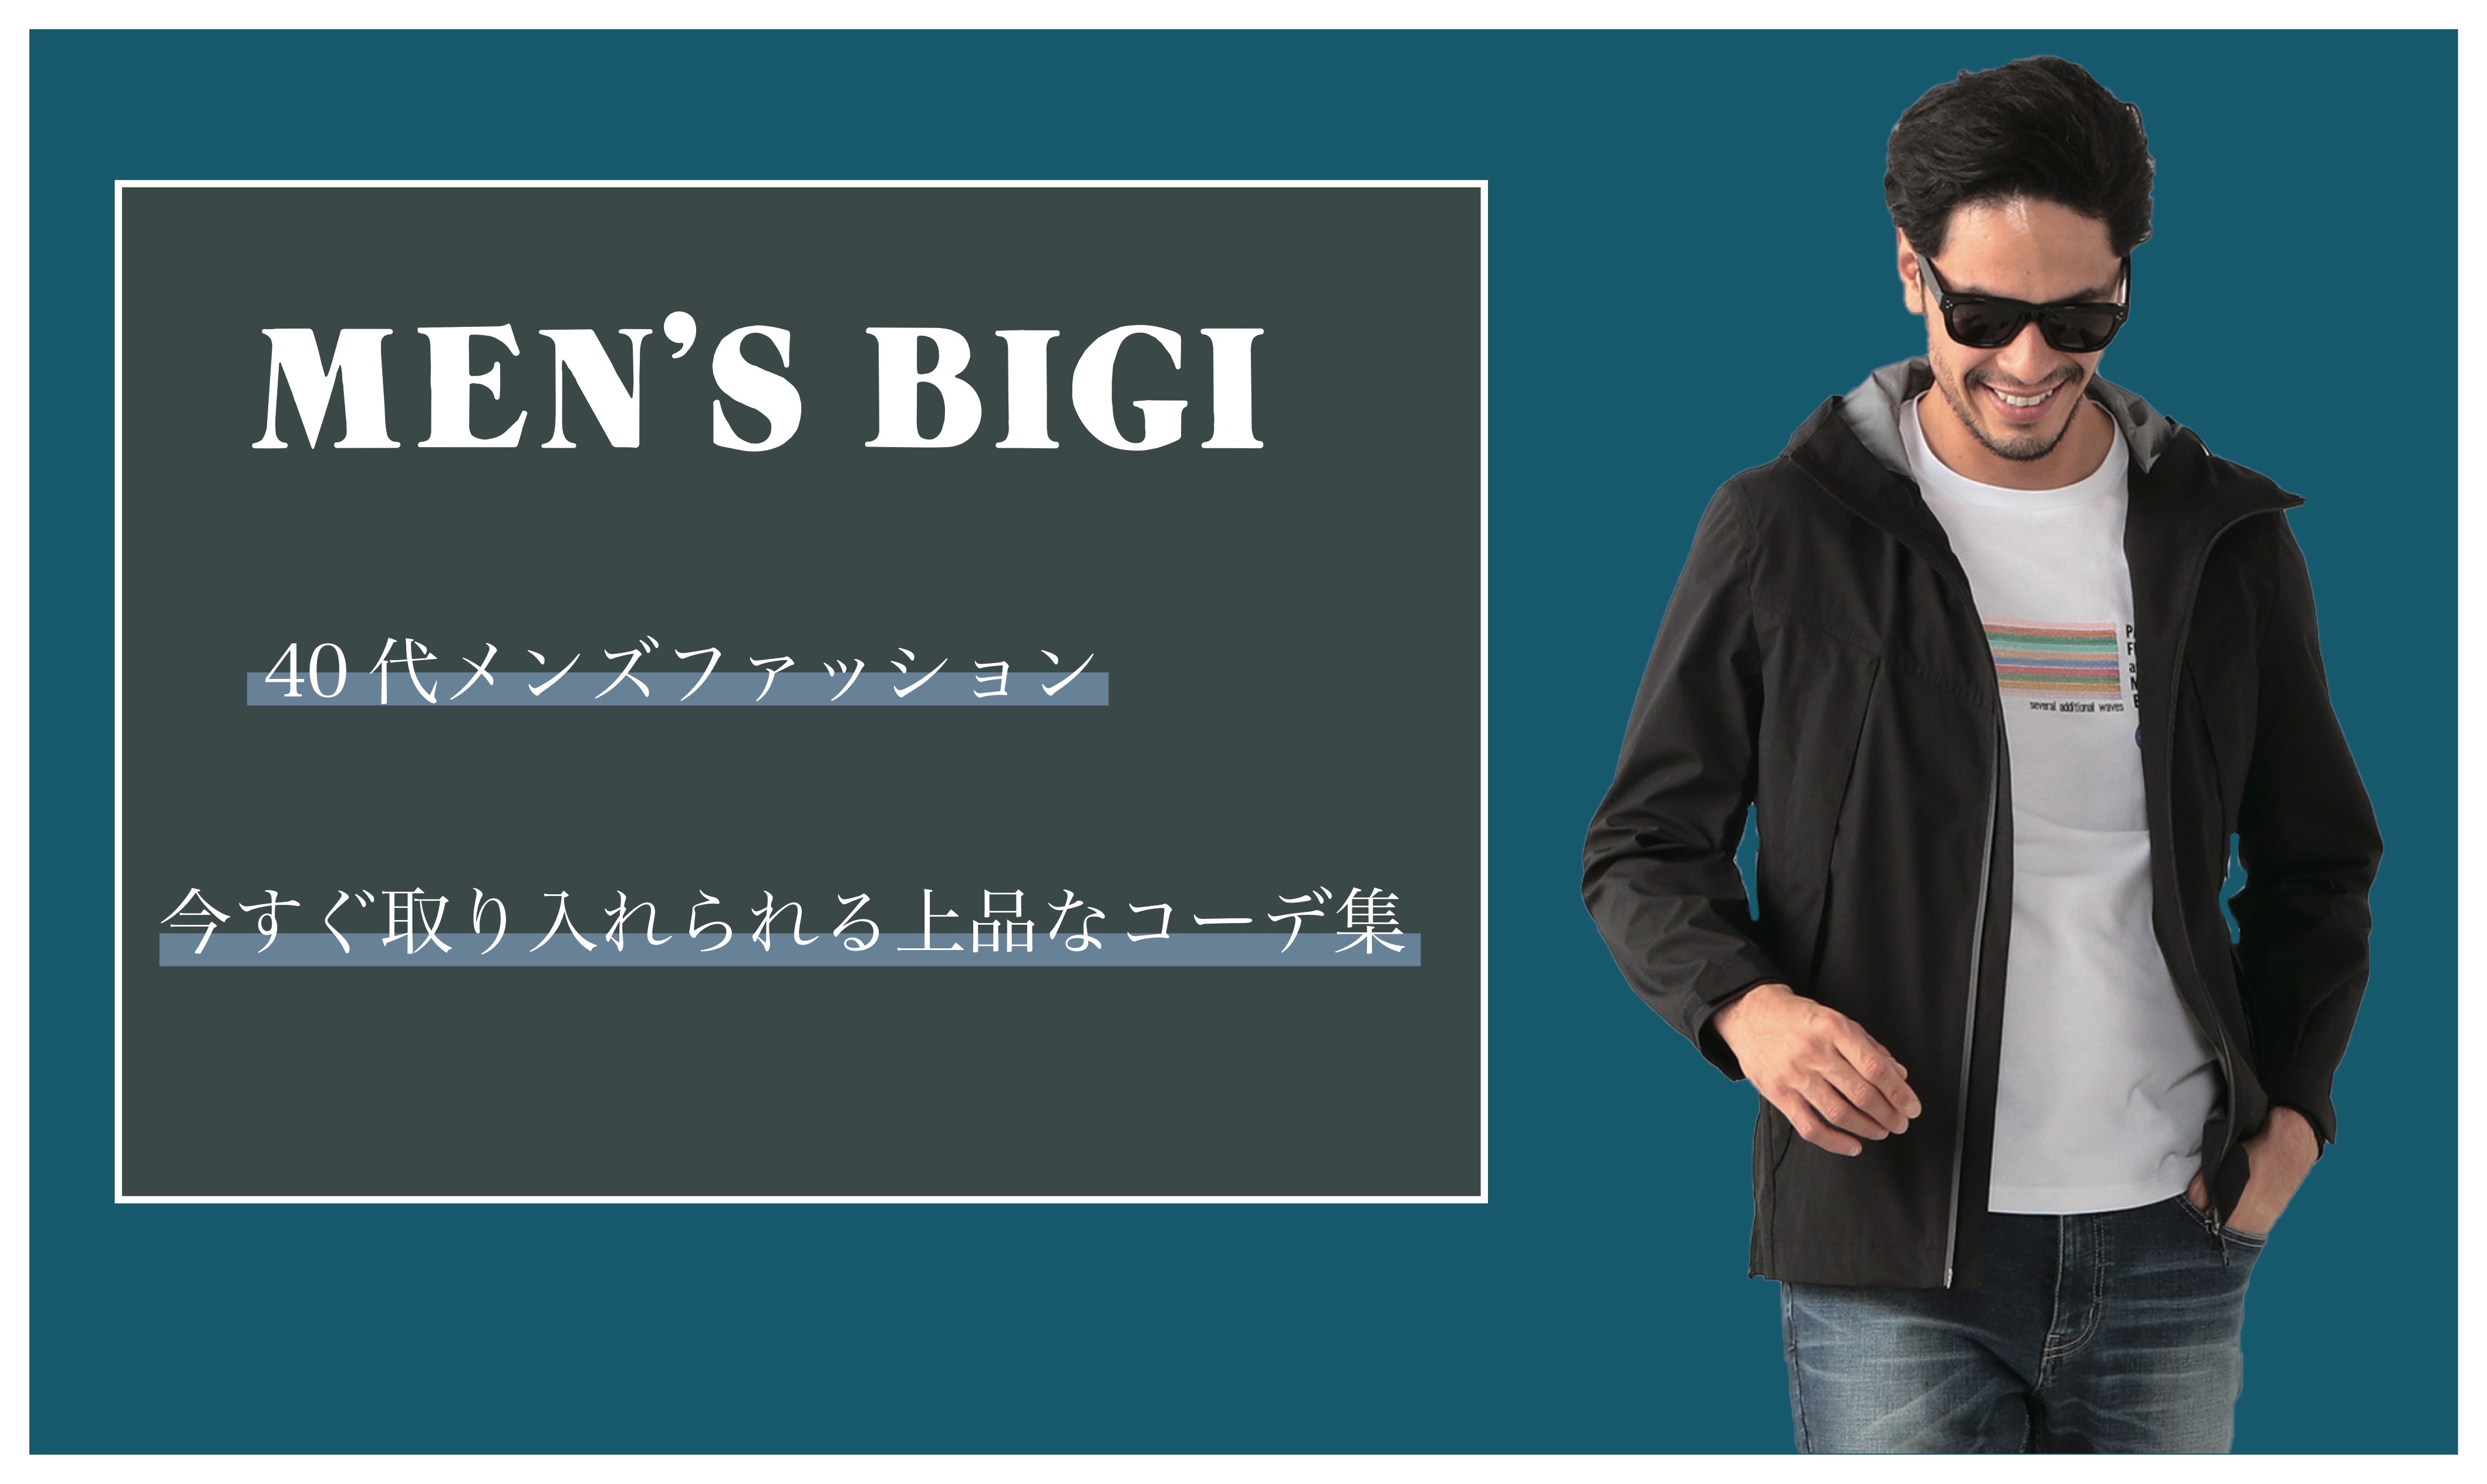 40代メンズファッション 今すぐ取り入れられる上品なコーデ集 Men S Bigi メンズファッション通販 Men S Bigi Online Store メンズビギ オンラインストア